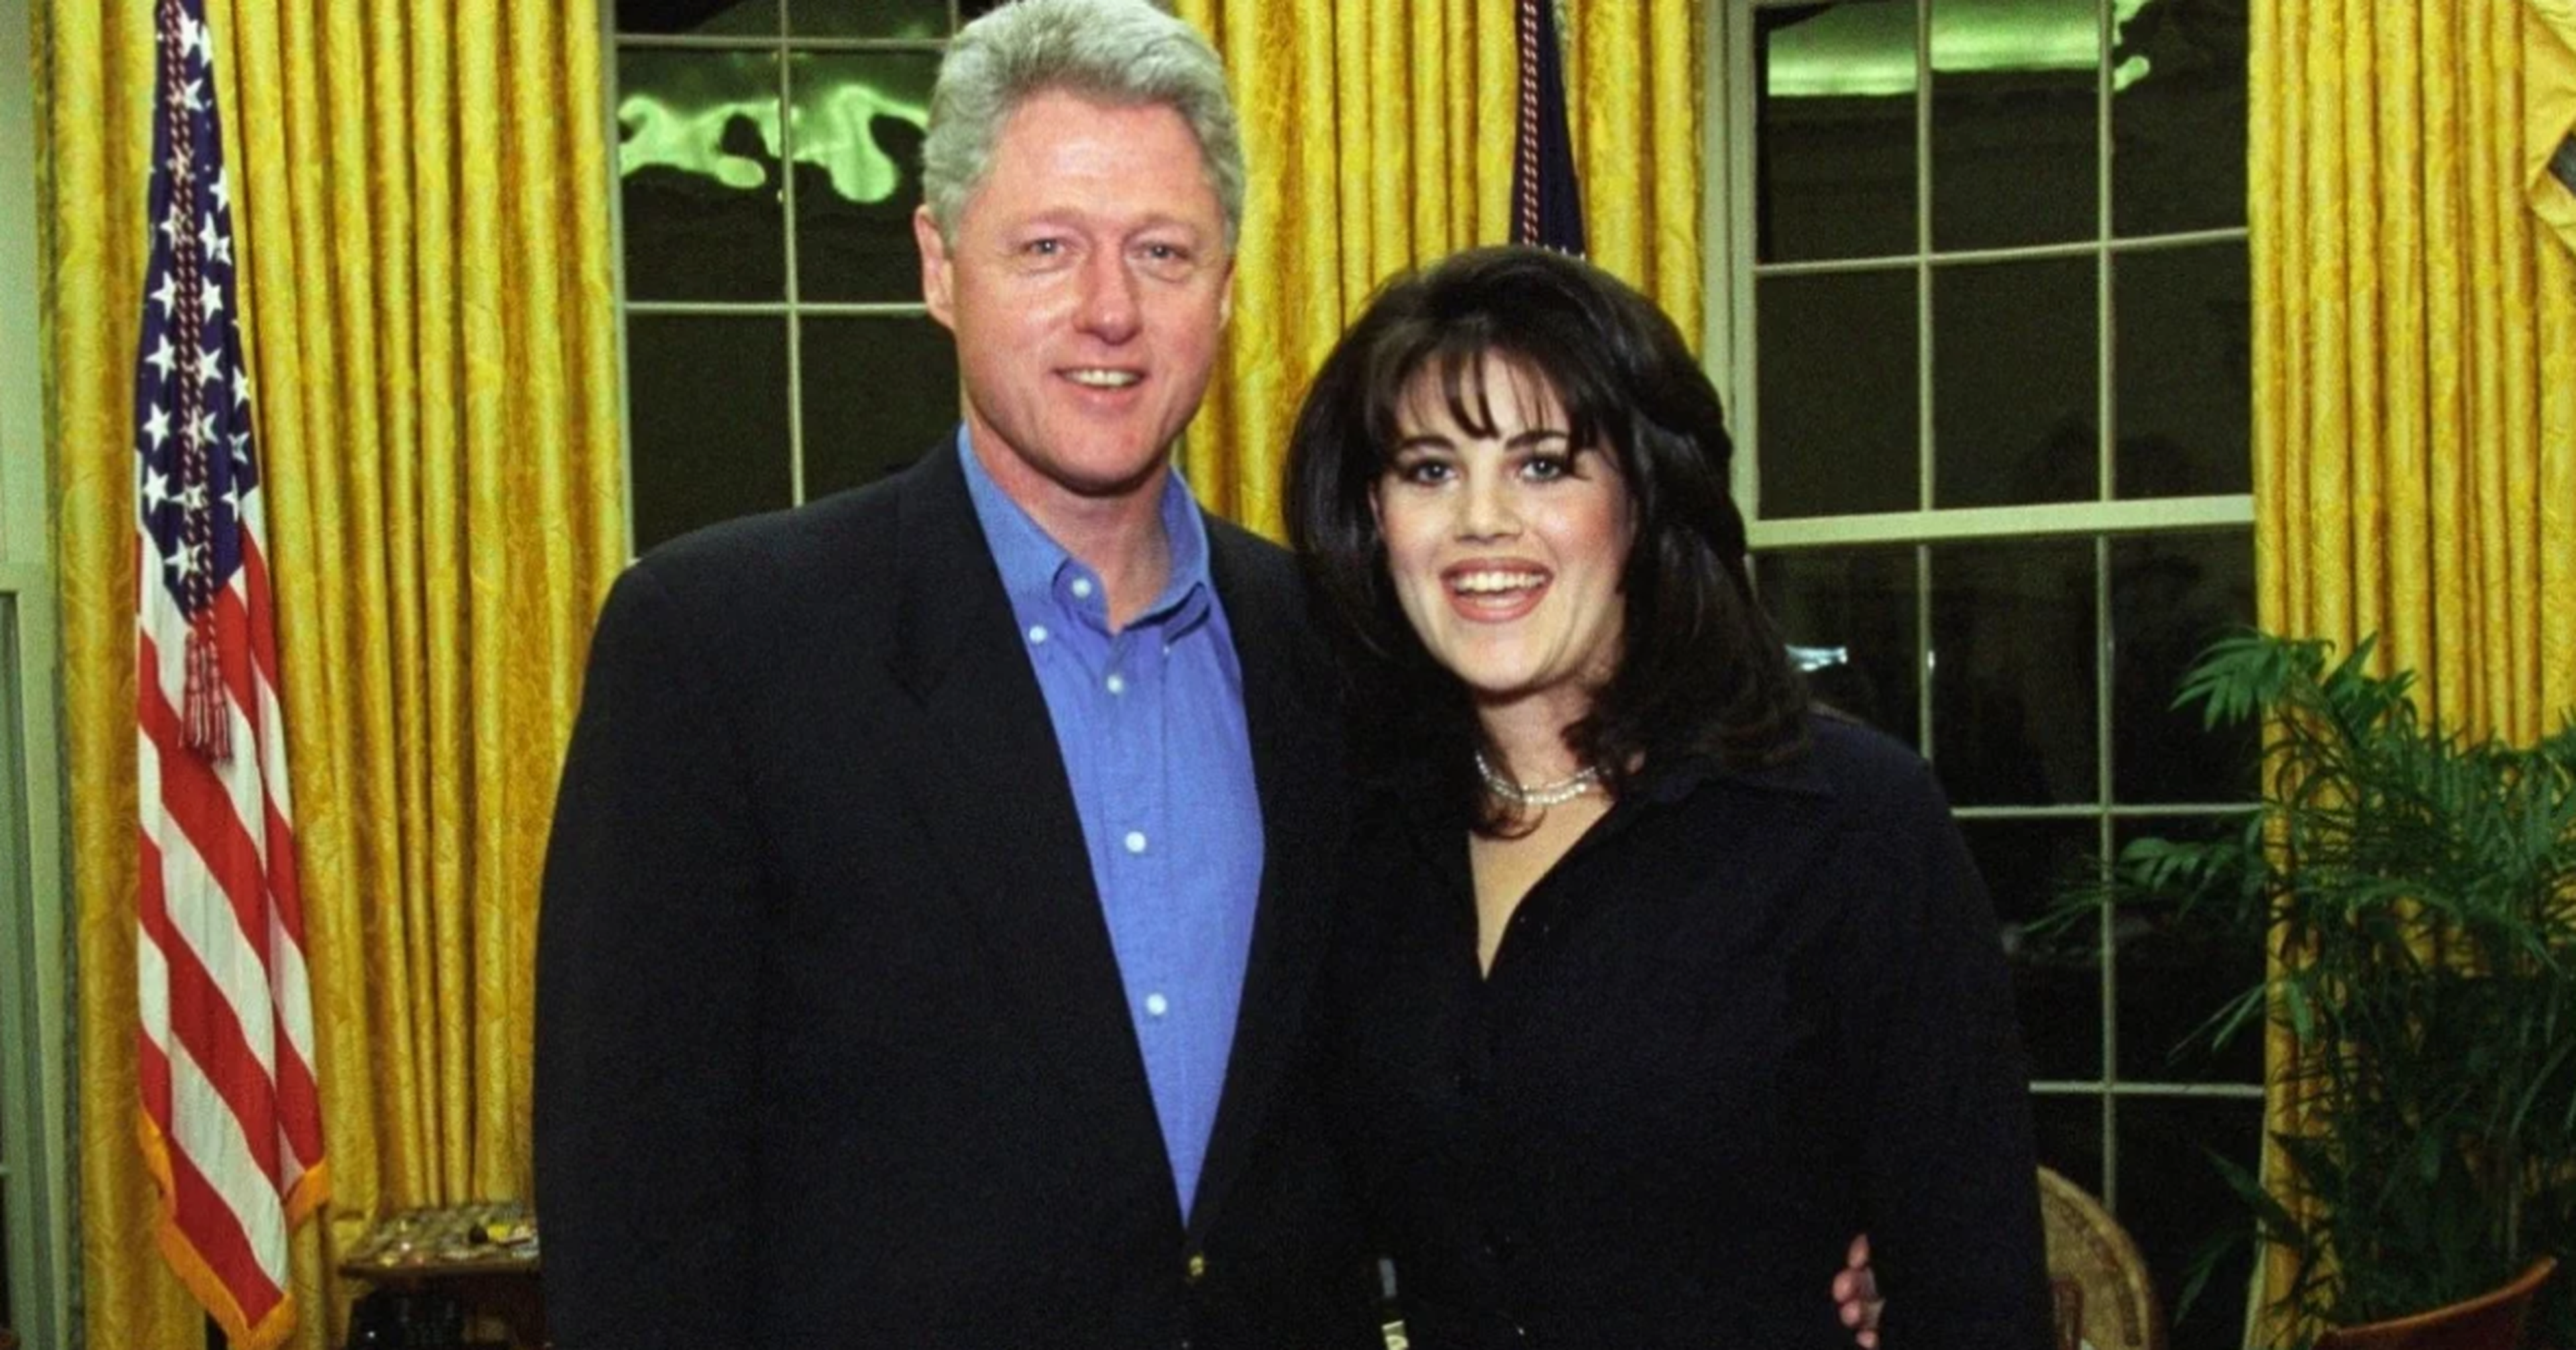 American Crime Story temporada 3 tratará sobre el escándalo sexual de Bill Clinton y Monica Lewinsky